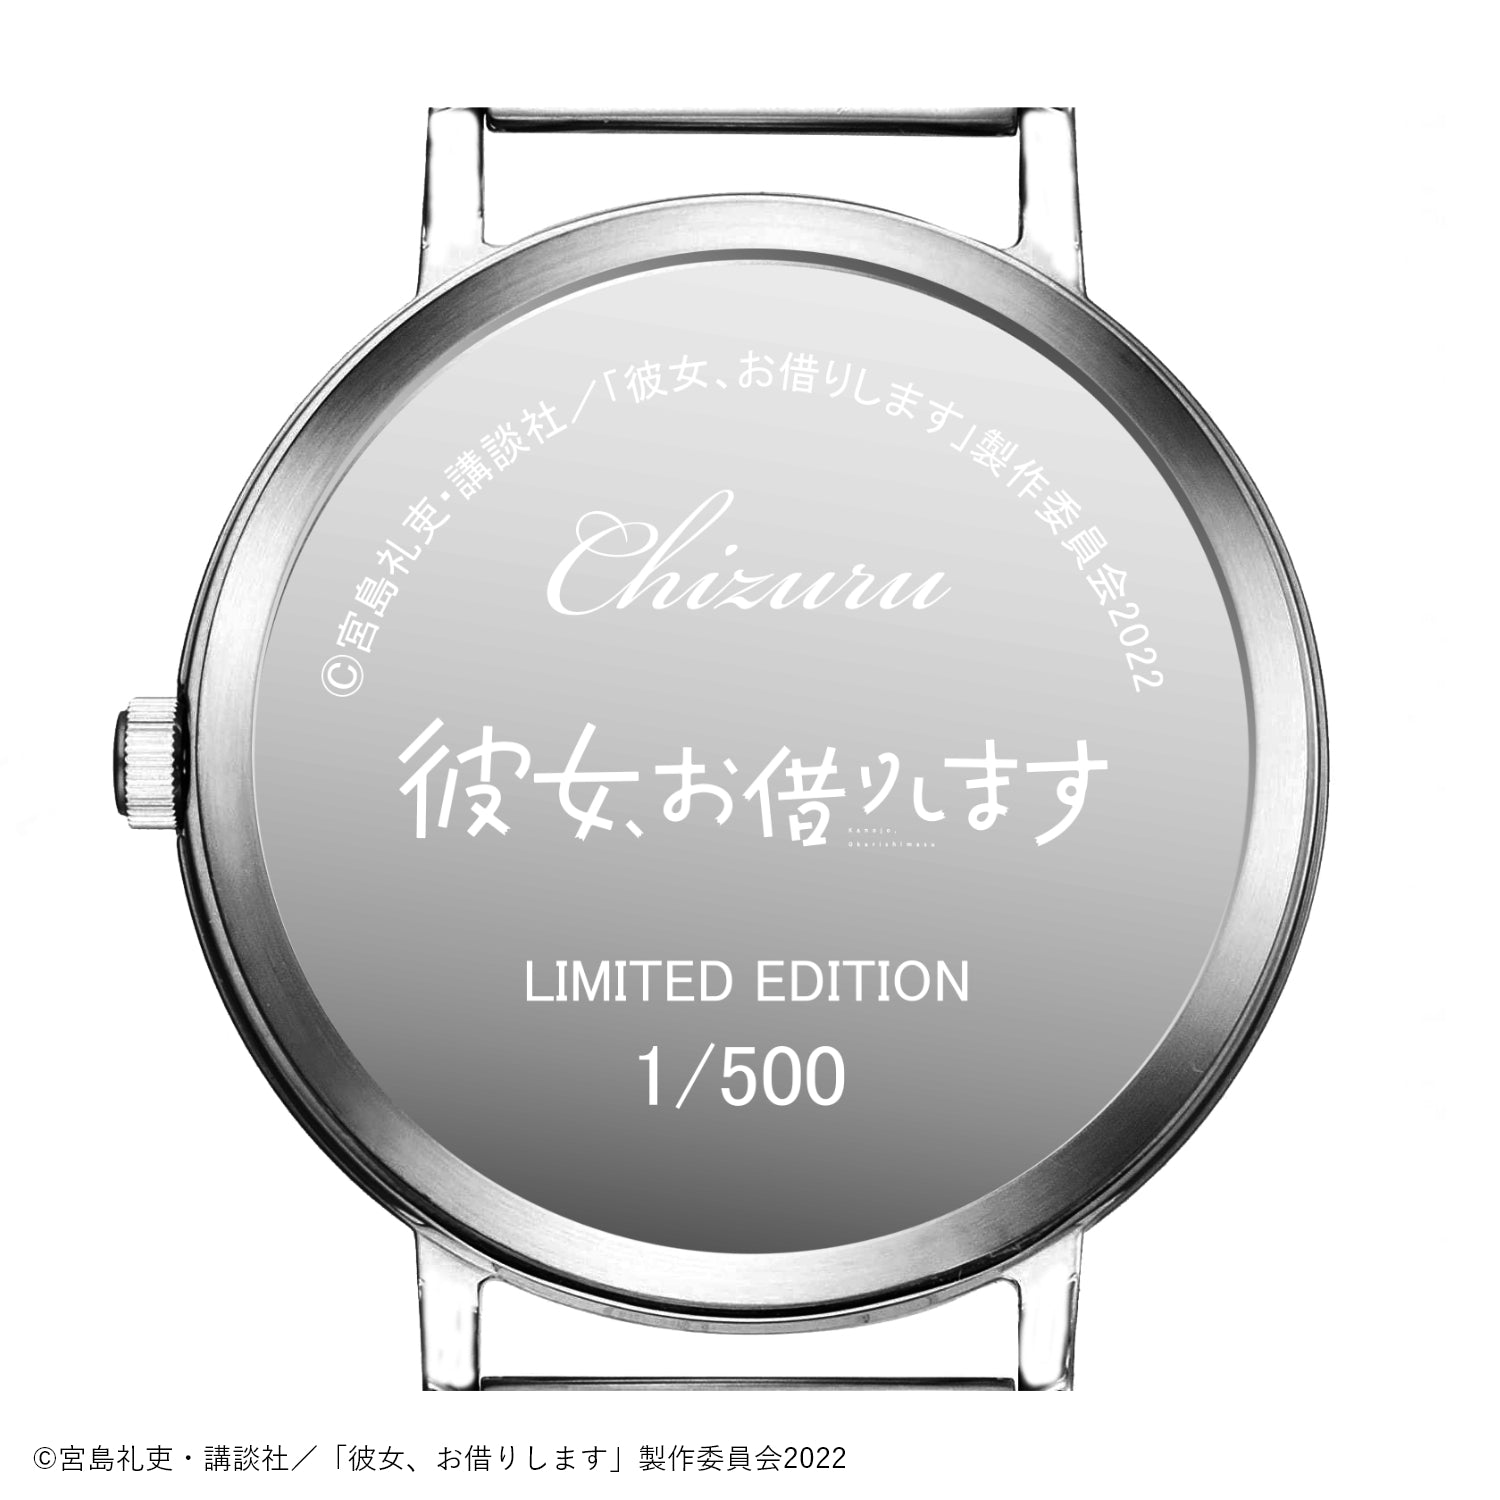 アニメ「彼女、お借りします」薄型スモールセコンド腕時計 | 水原千鶴 - 公式通販サイト「アニメコレクション/Anime Collection」